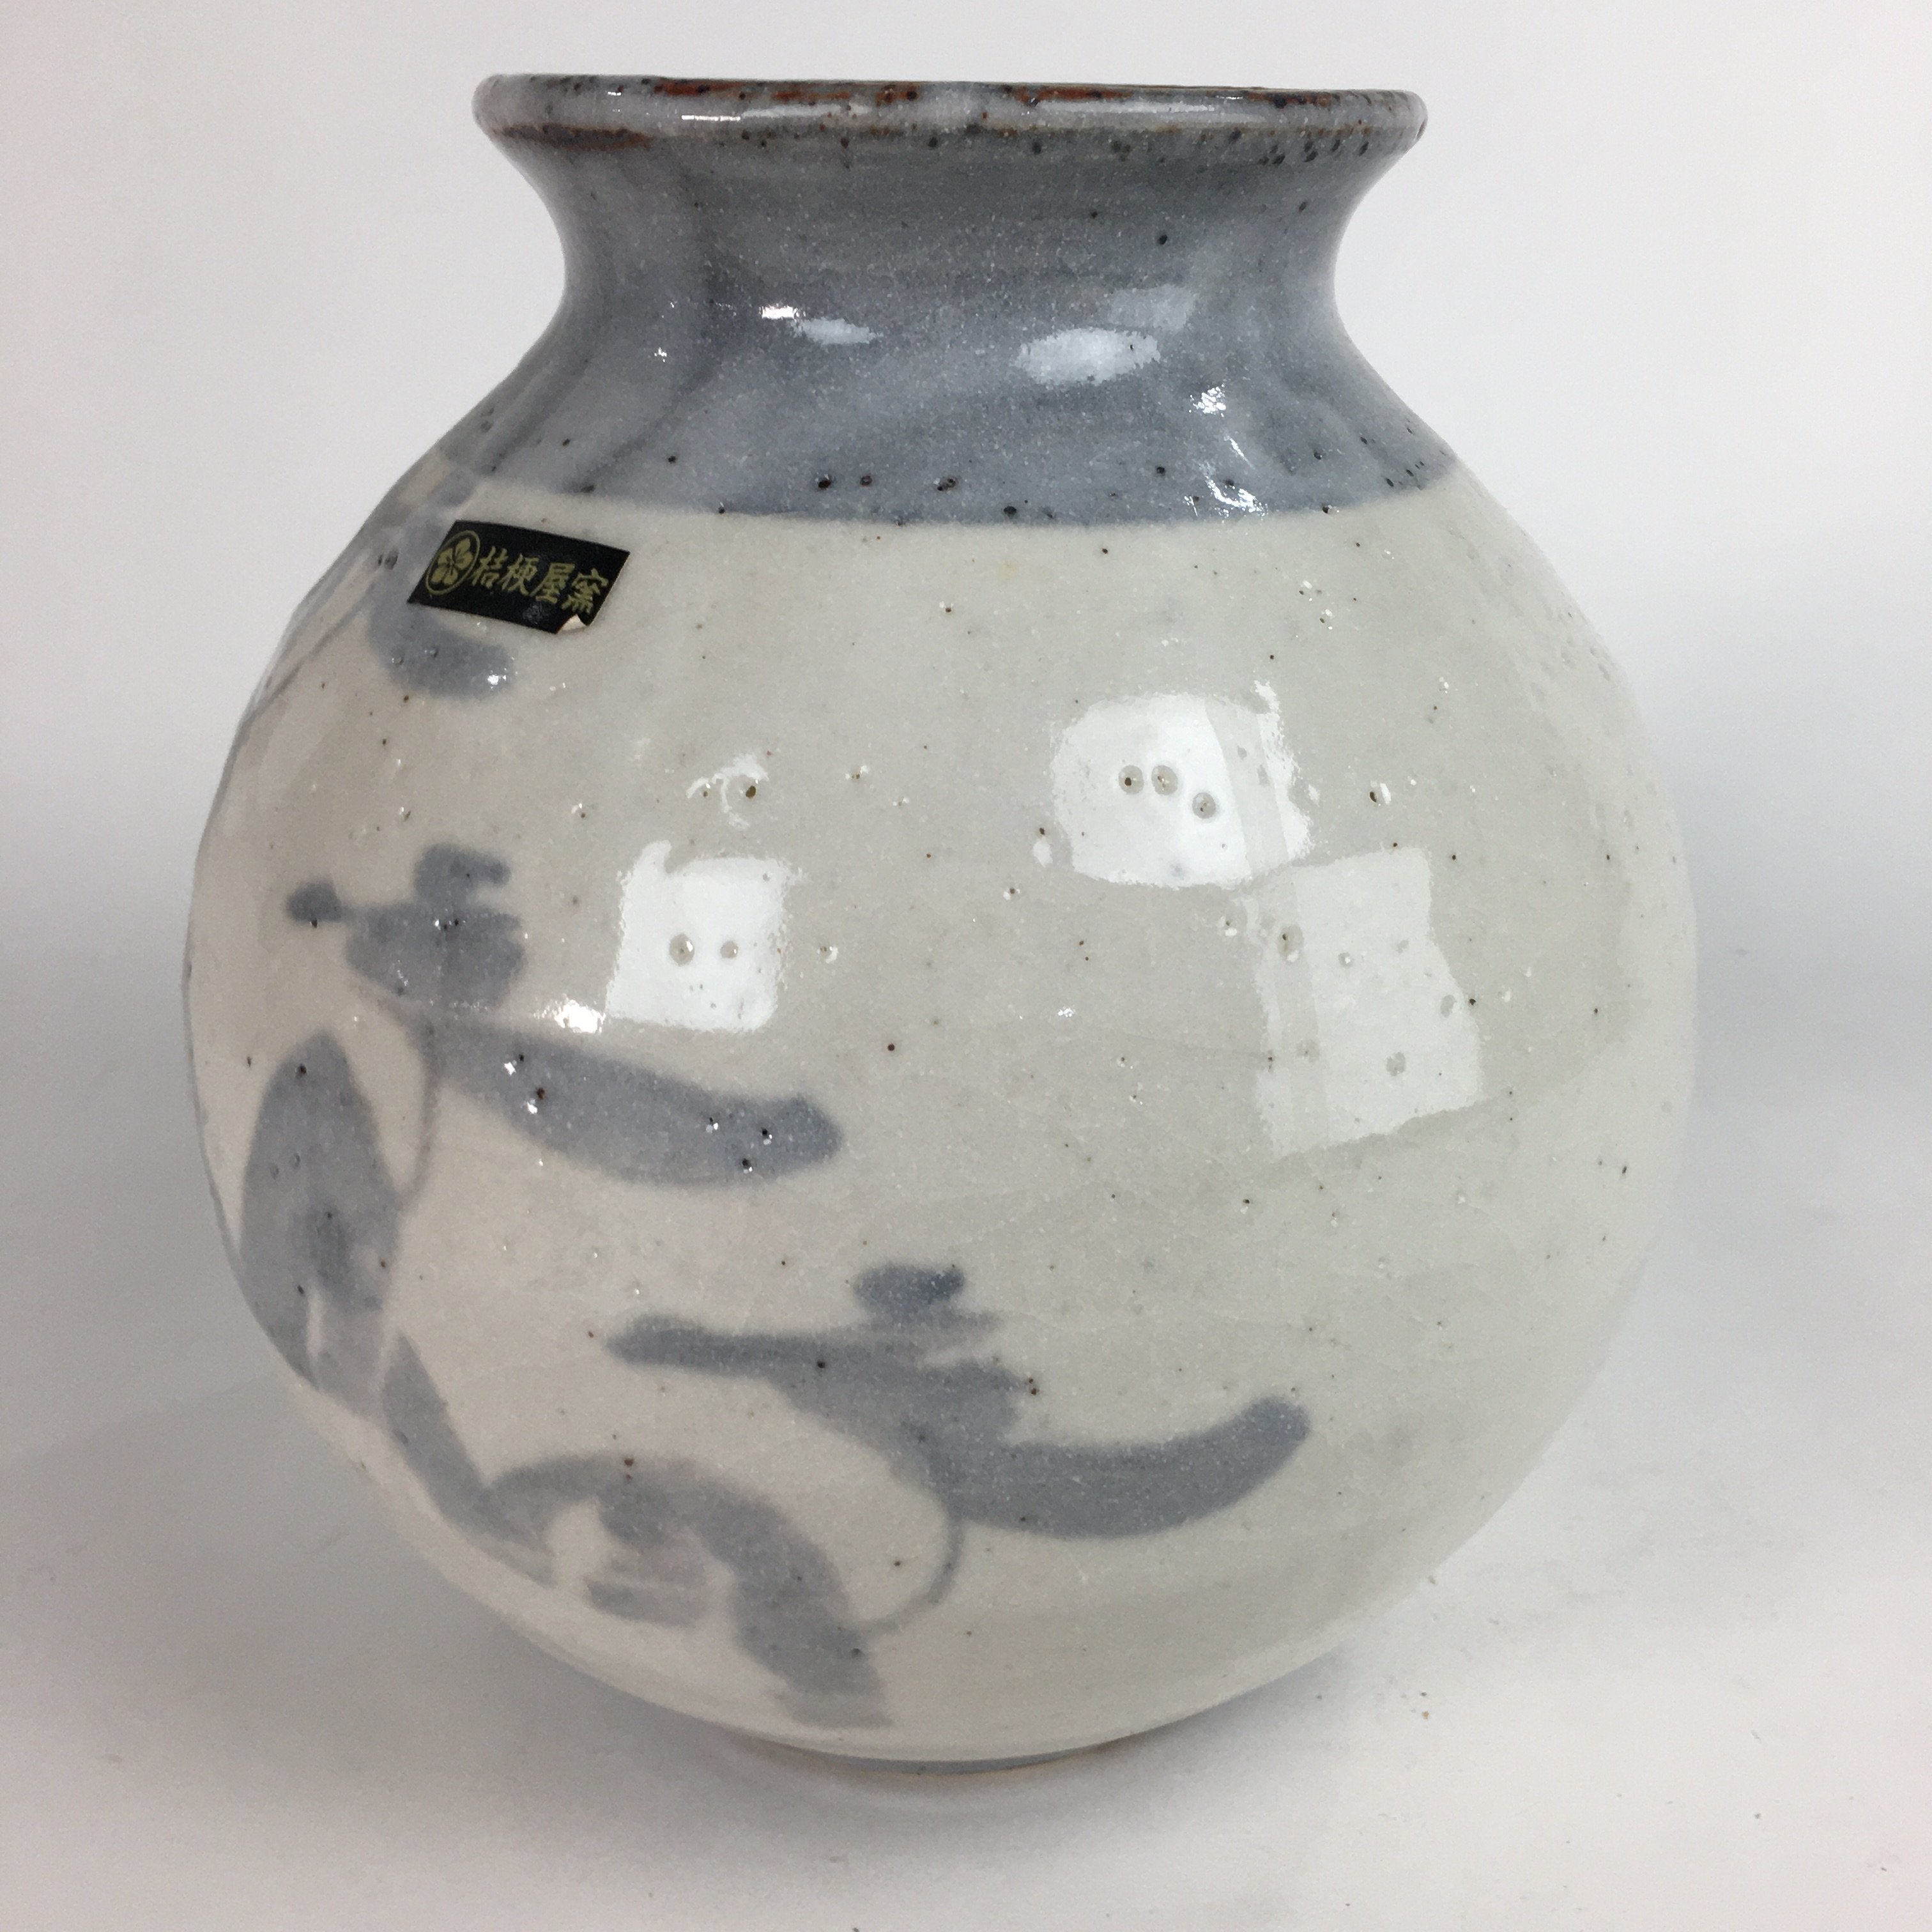 Japanese Ceramic Flower Vase Kabin Mino ware Vtg Pottery White Ikebana FV921